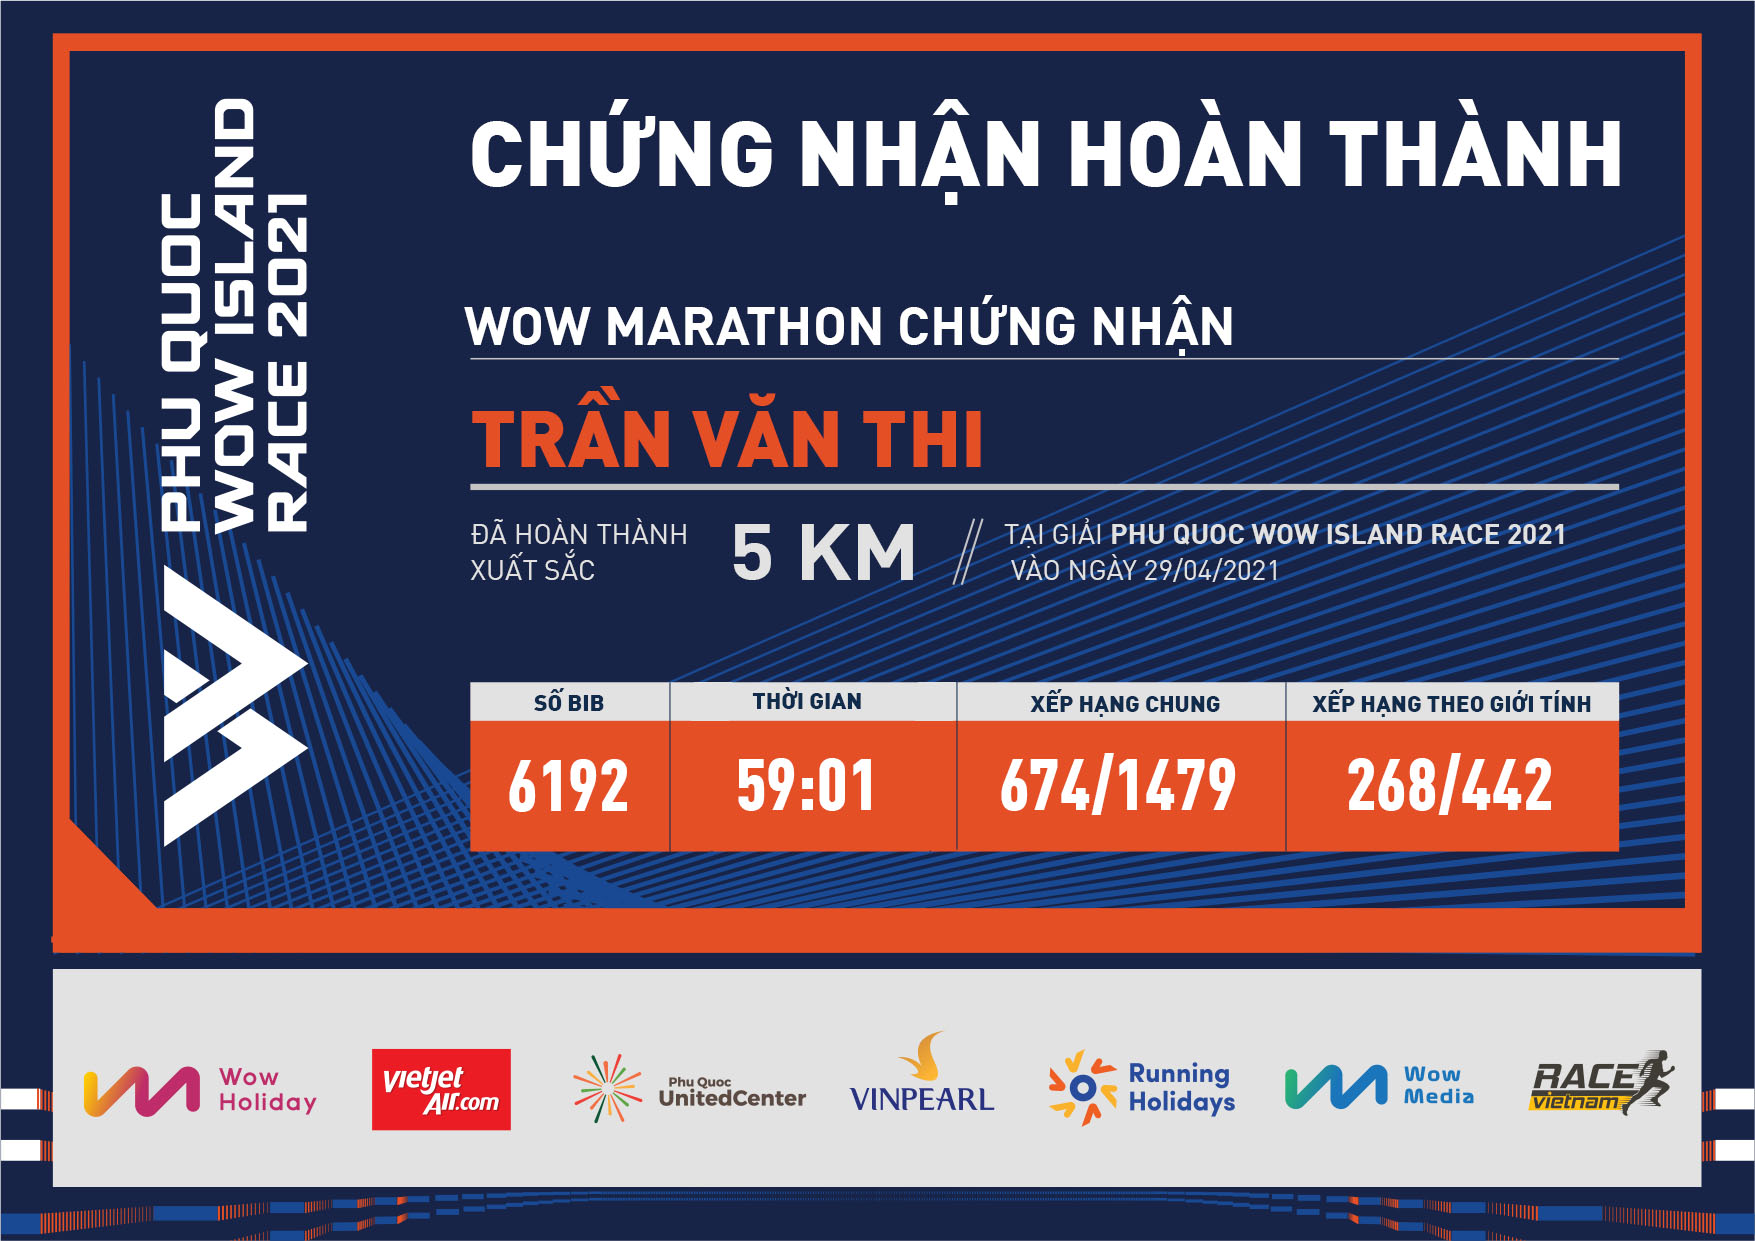 6192 - Trần Văn Thi